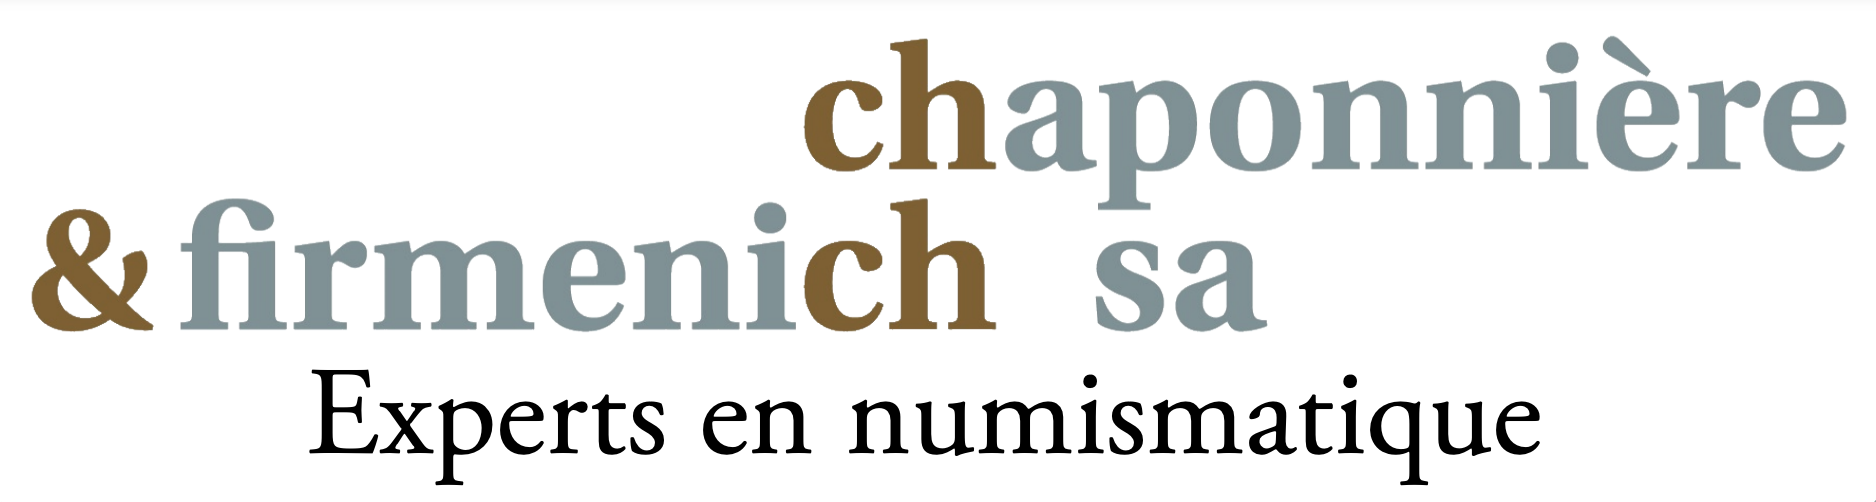 Chaponnière & Firmenich